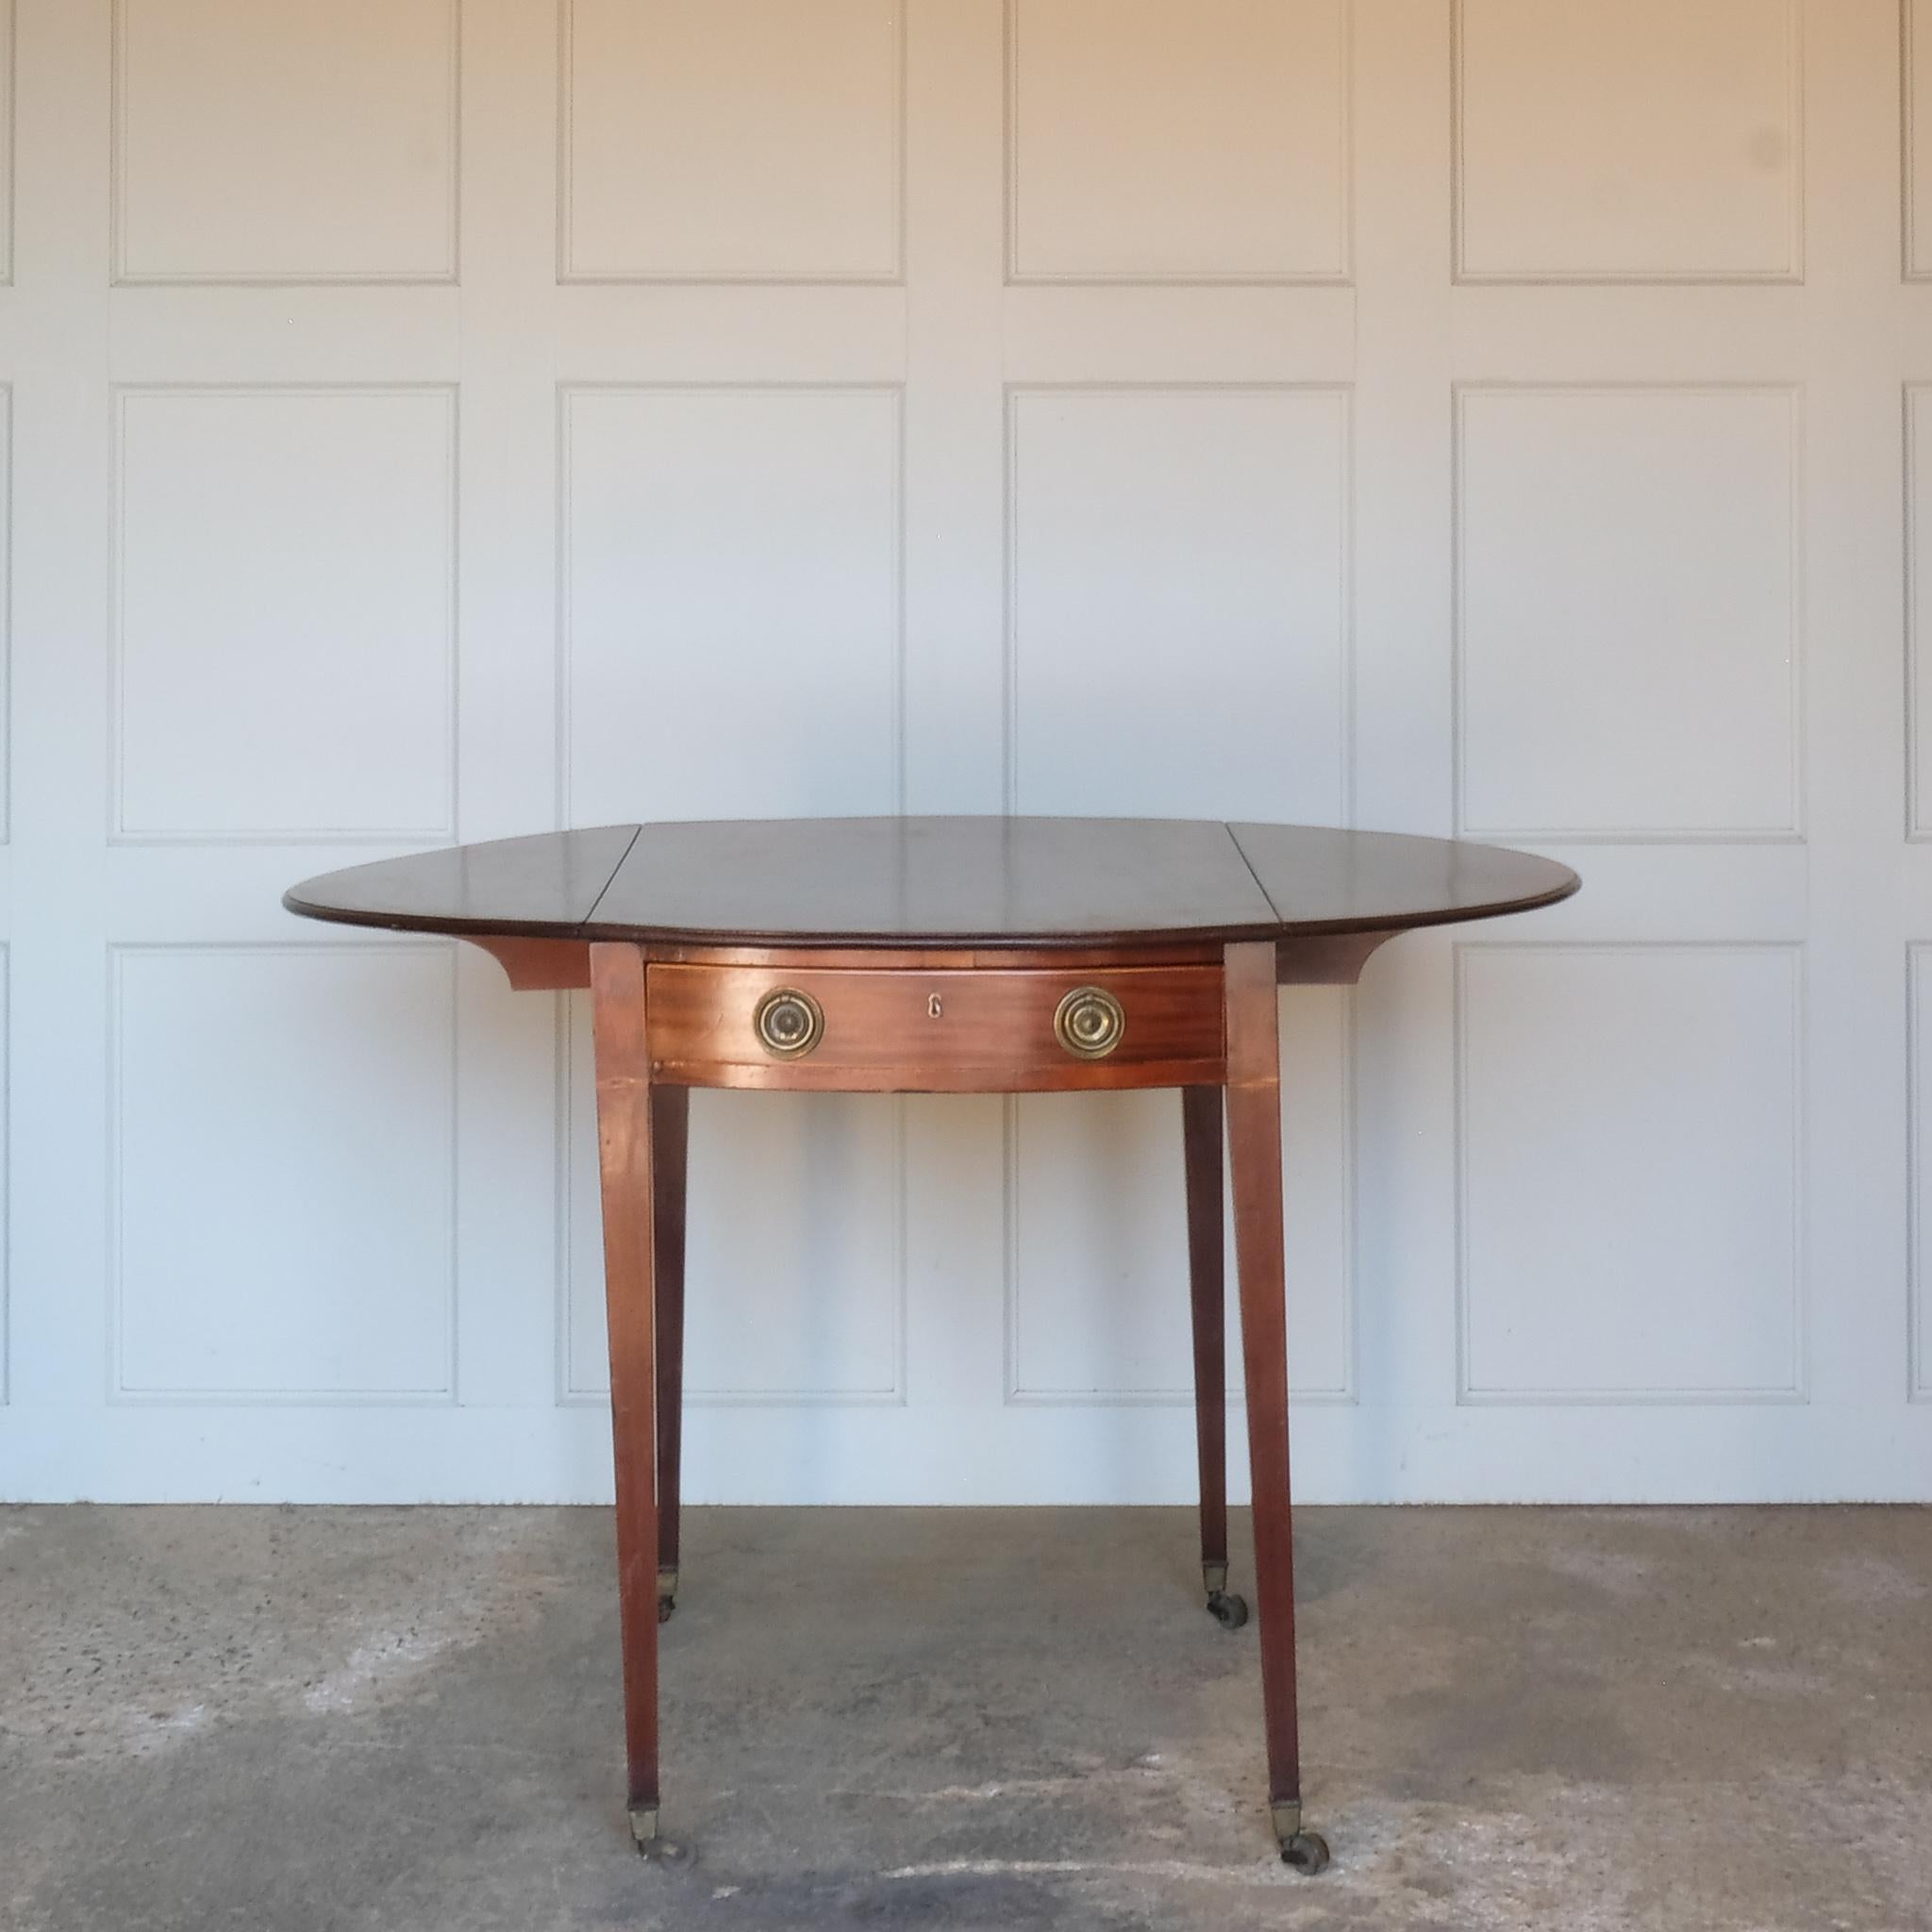 Eine charmante George III Mahagoni Pembroke Tisch, eine ovale Platte mit zarten Buchsbaum Bespannung an den Rändern über einer einzigen Schublade, mit Arbeitsschlüssel, eine Dummy-Schublade auf der anderen Seite, über quadratischen verjüngten Beinen